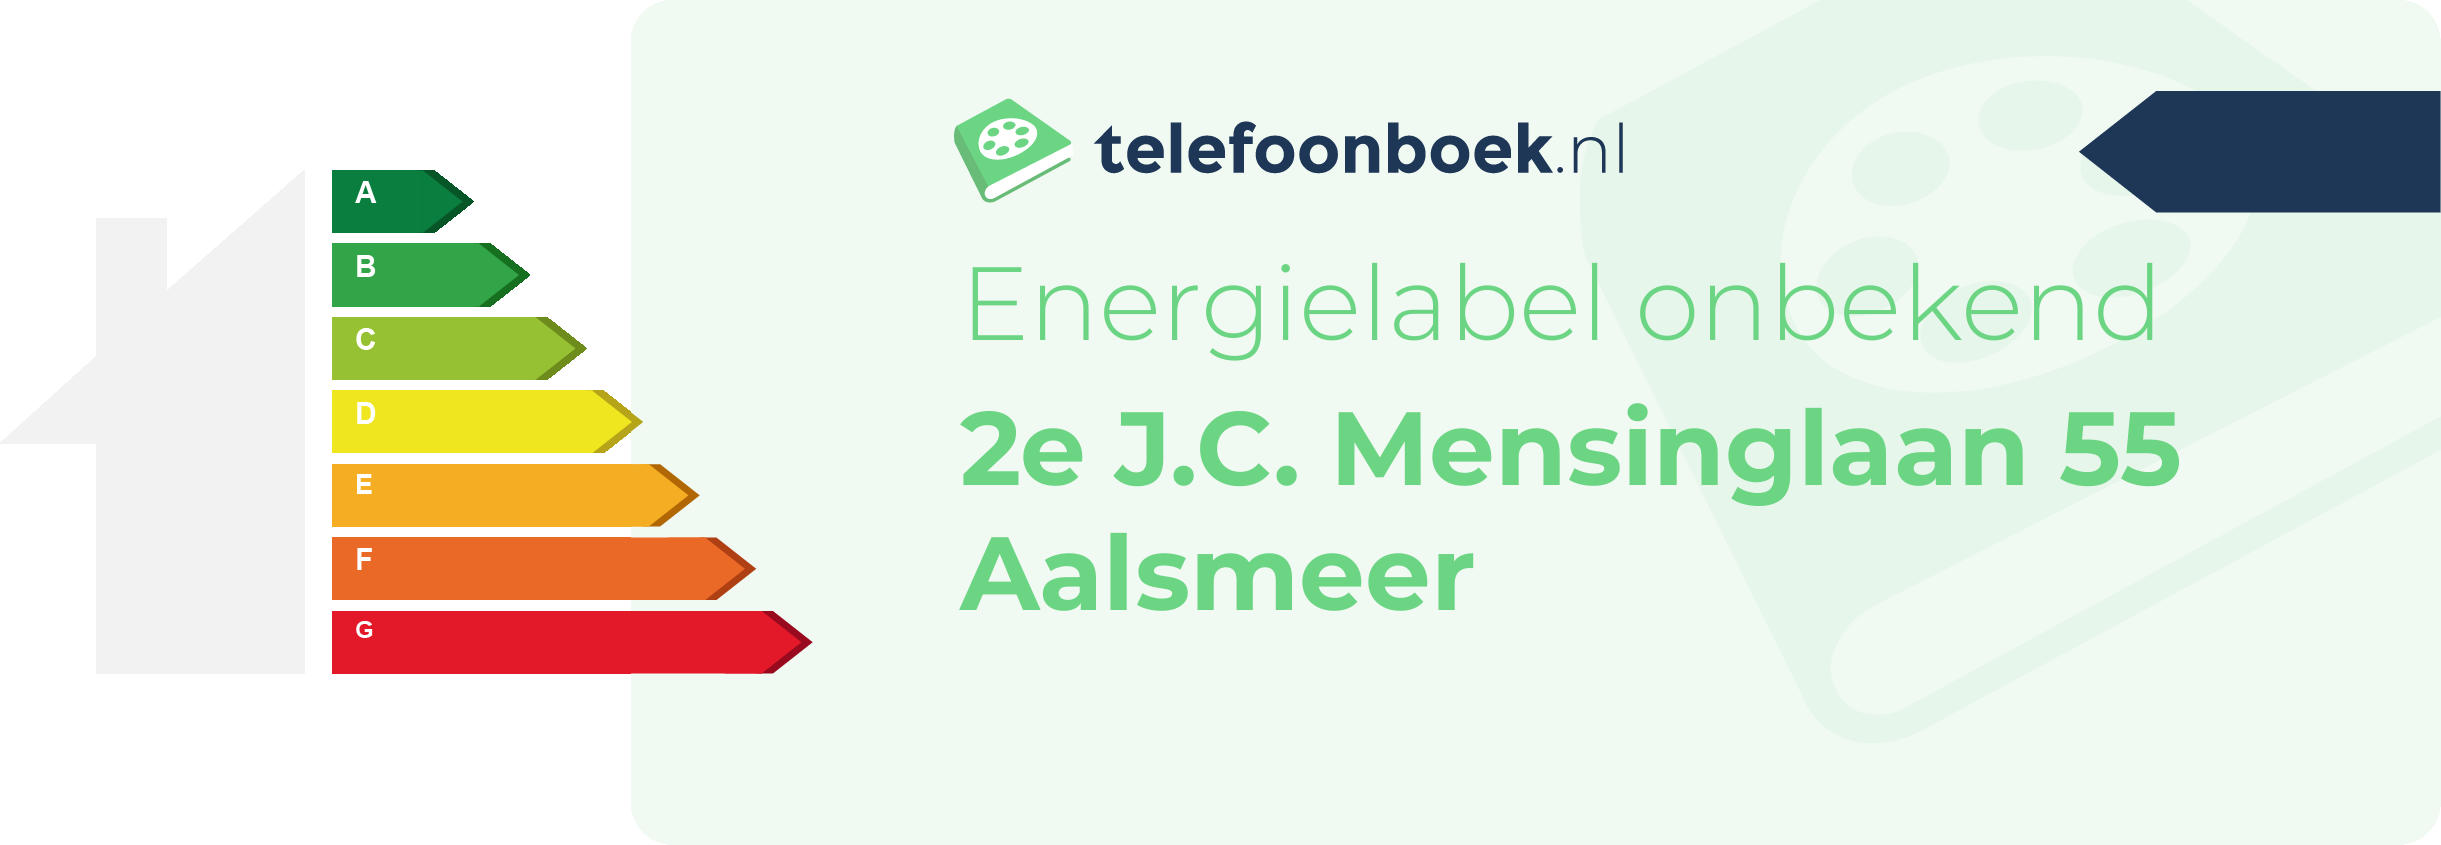 Energielabel 2e J.C. Mensinglaan 55 Aalsmeer